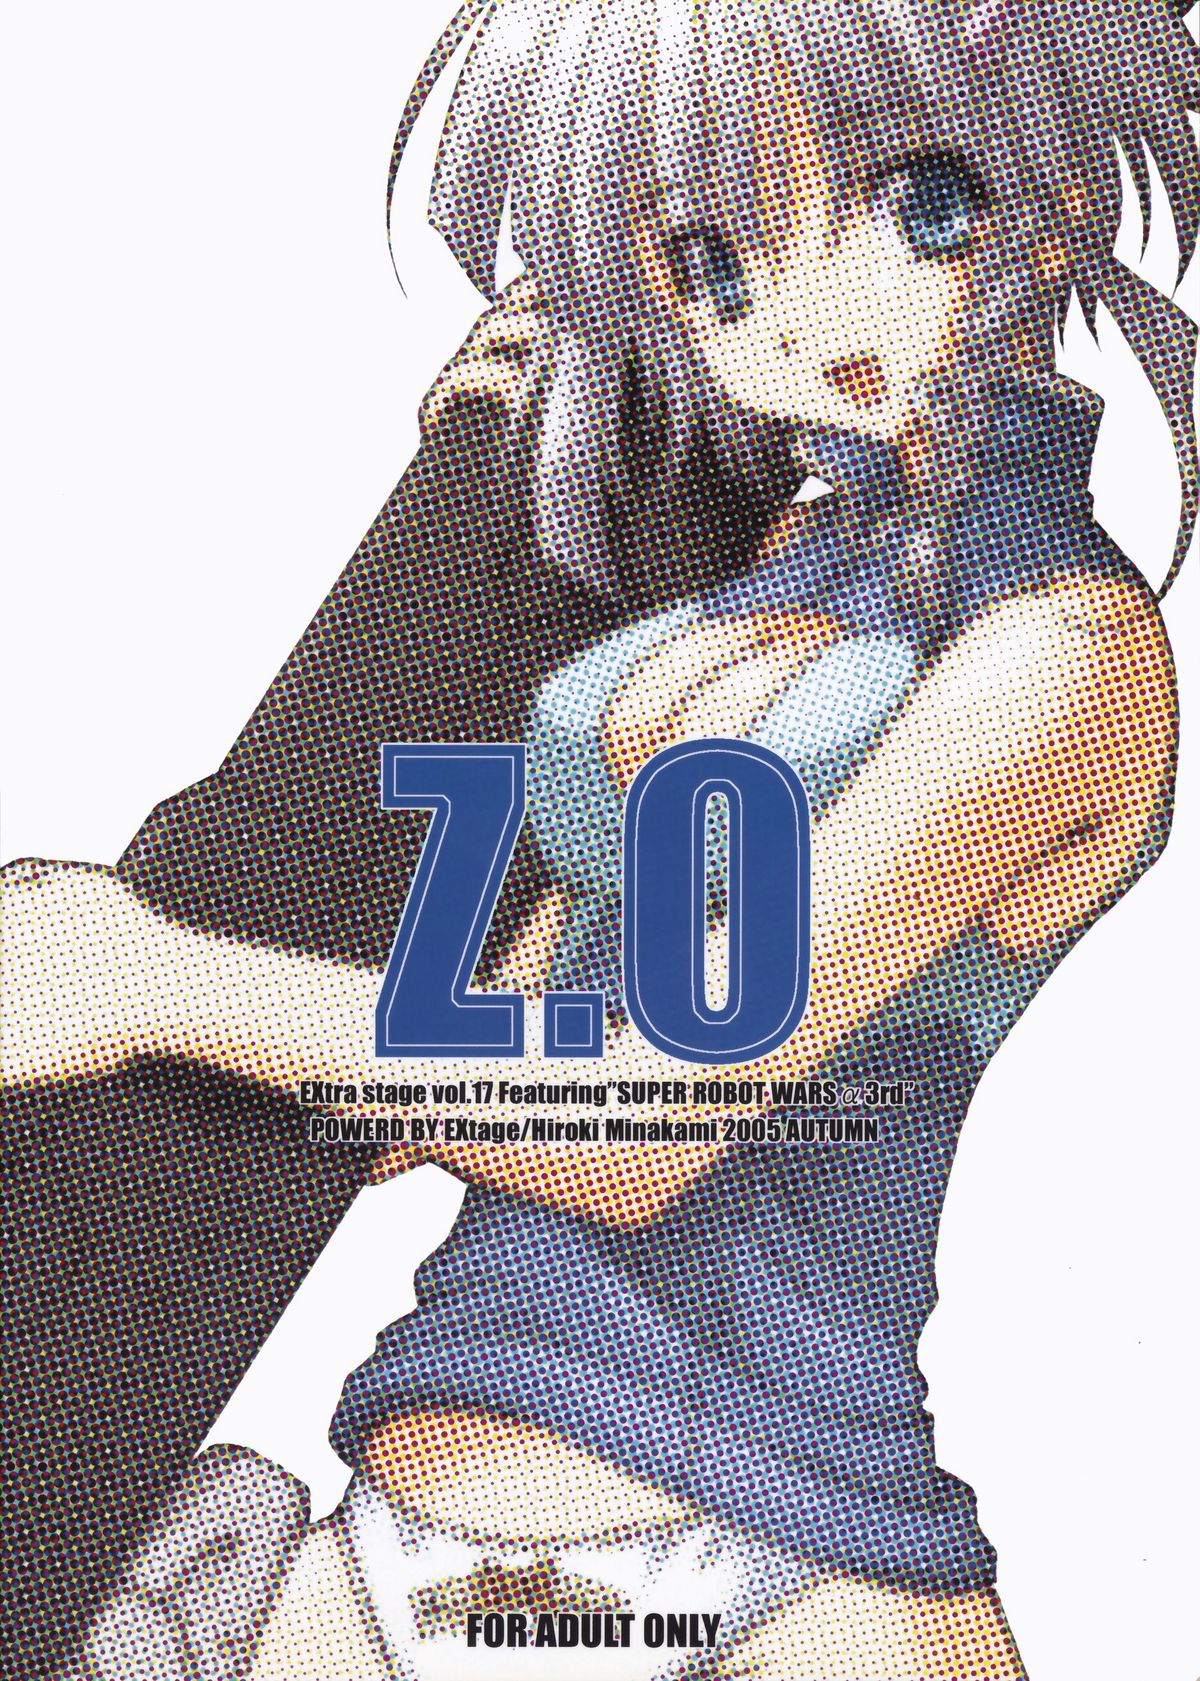 (コミックキャッスル2005) [EXtage (水上広樹)] EXtra stage vol.17 Z.O (スーパーロボット大戦)